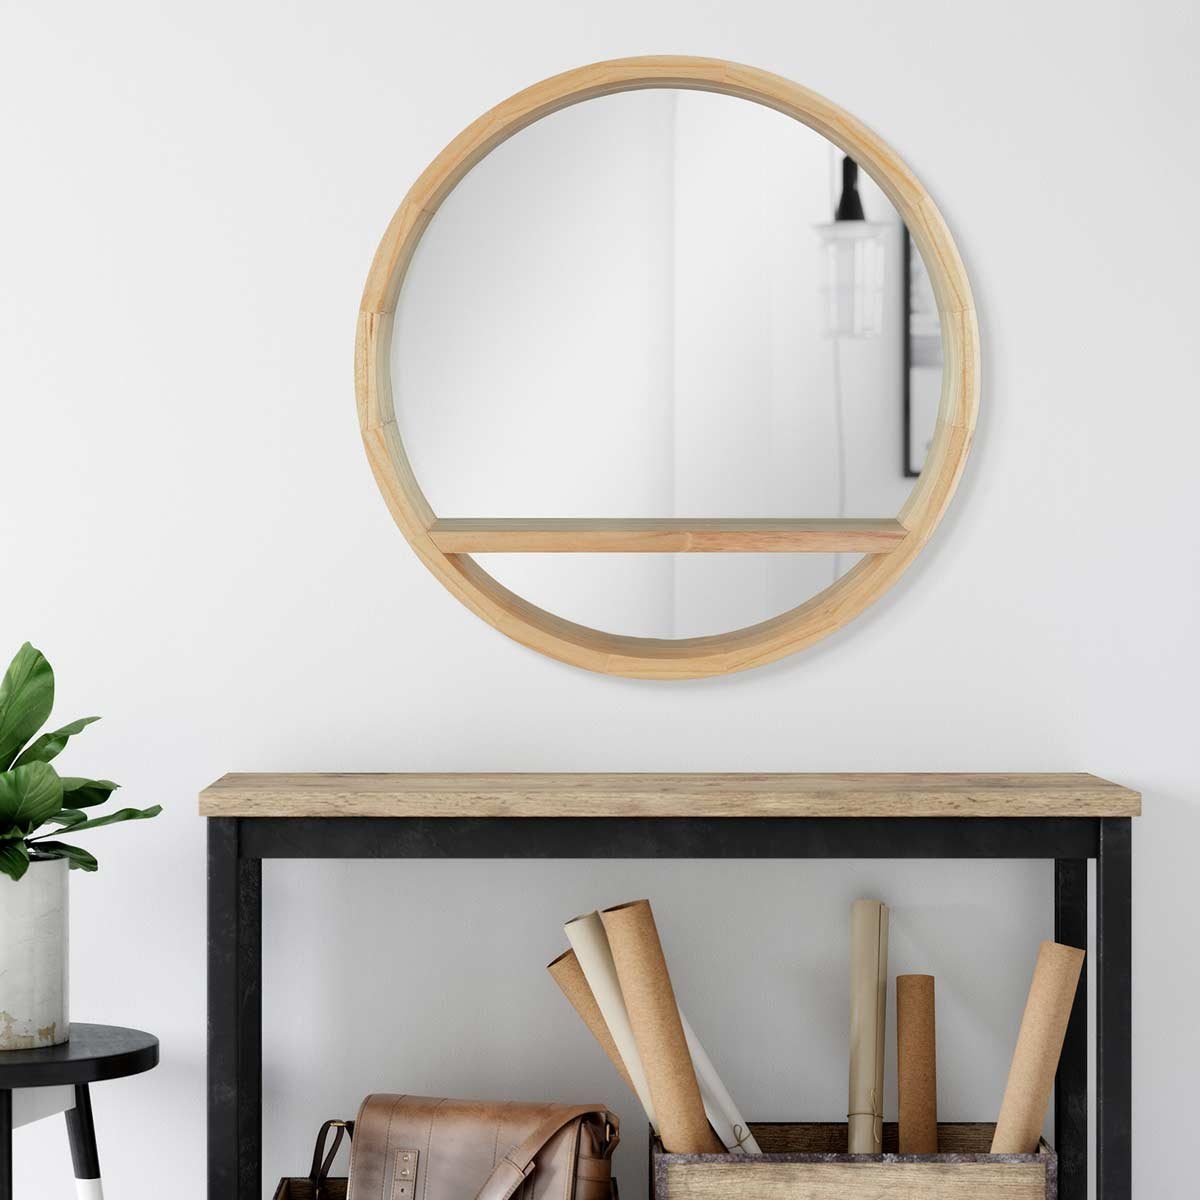 PHOTOLINI Spiegel mit Holzrahmen und praktischer Naturholz Wandspiegel Ablagefläche